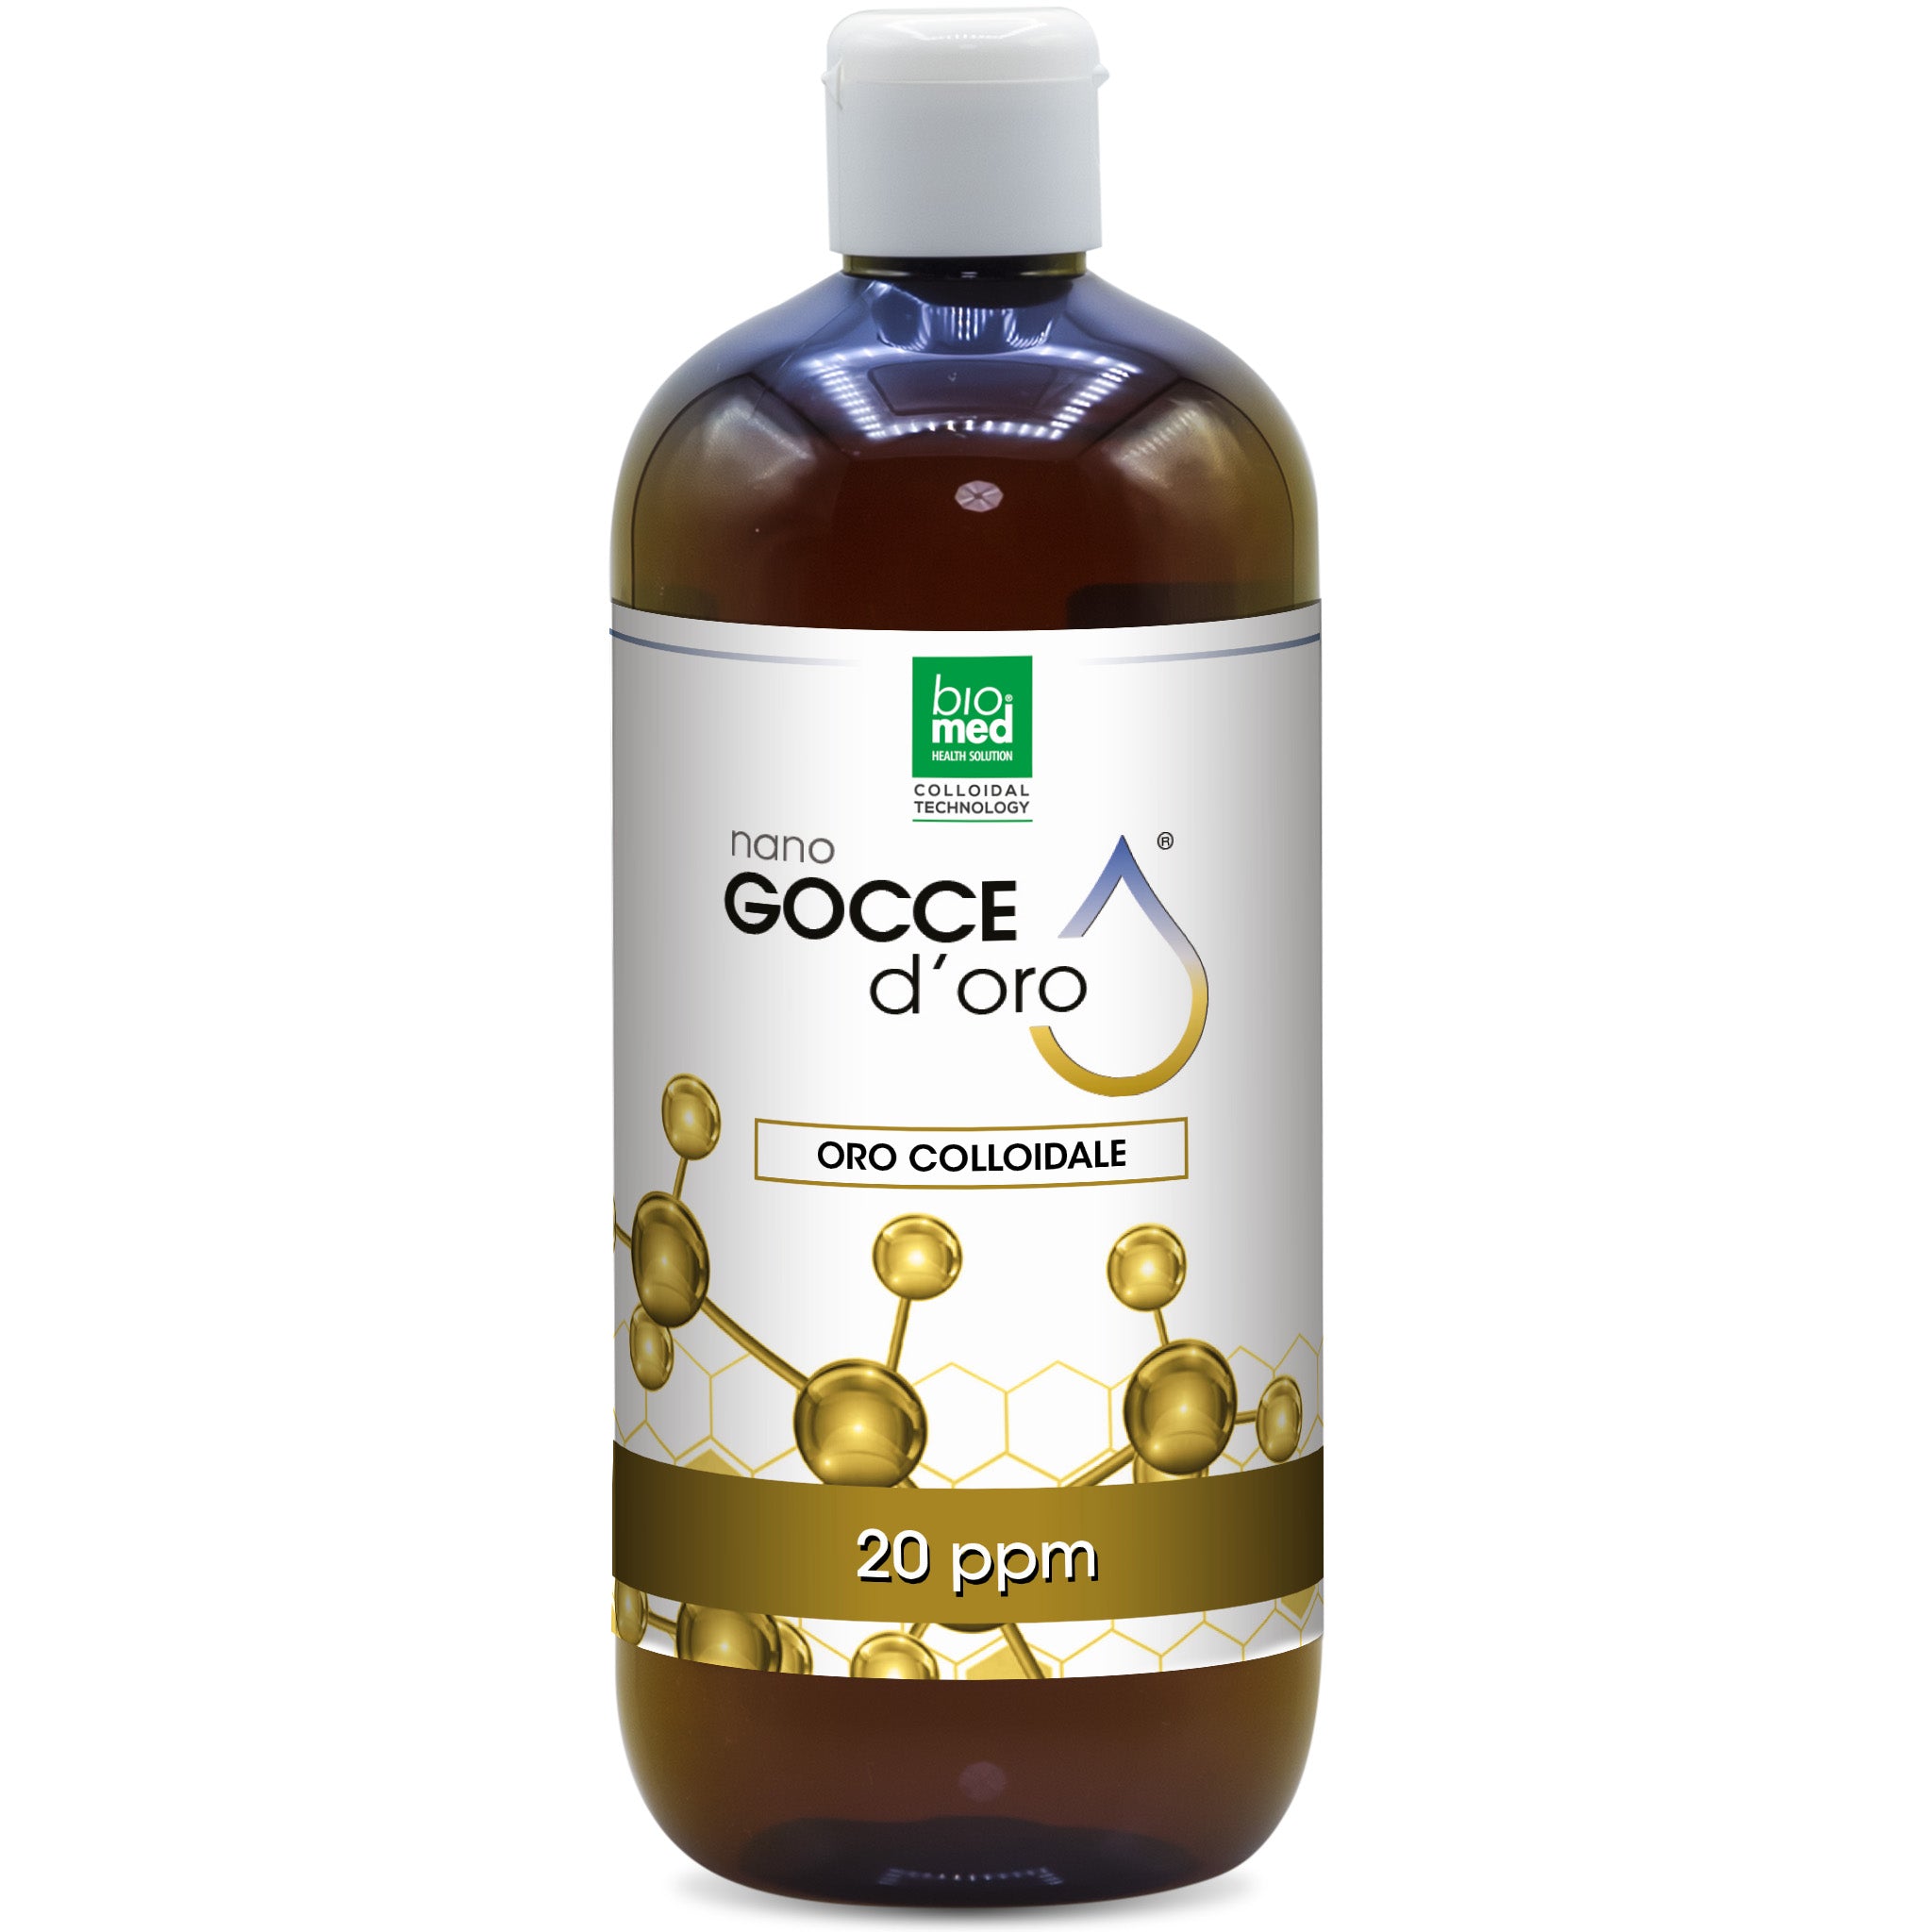 oro colloidale Attivo - nano goccie biomed - 500 ml. - 20 ppm